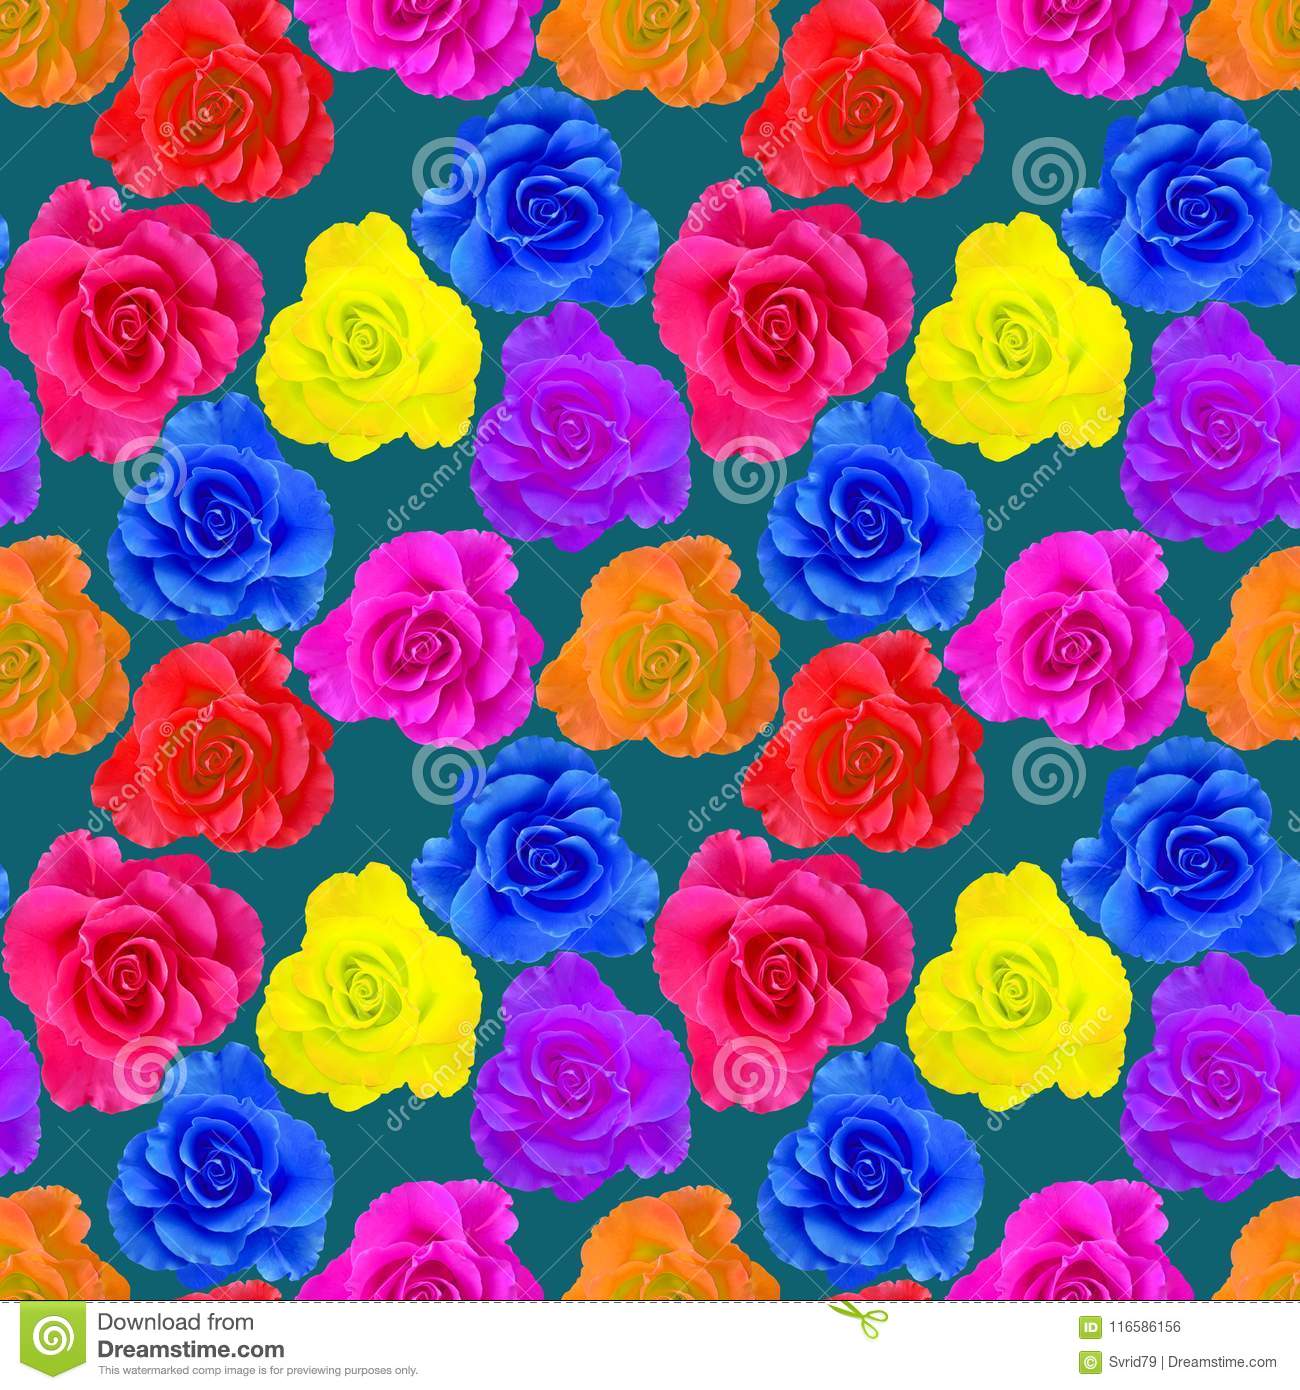 Rose, Rose Flower - Garden Roses - HD Wallpaper 